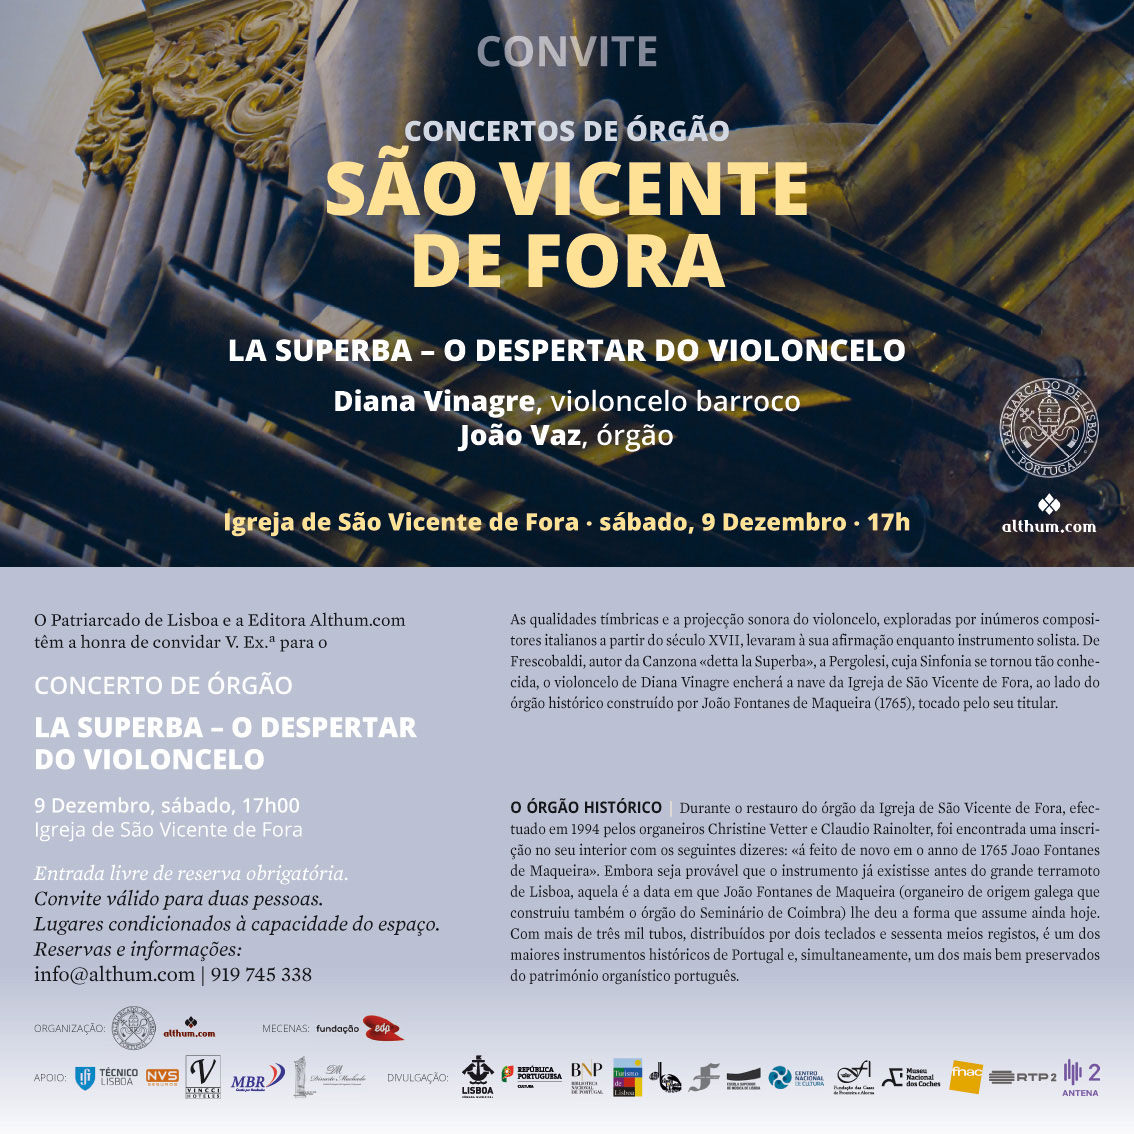 Concerto de órgão na Igreja de São Vicente de Fora, dia 9 de Dezembro, sábado, às 17h